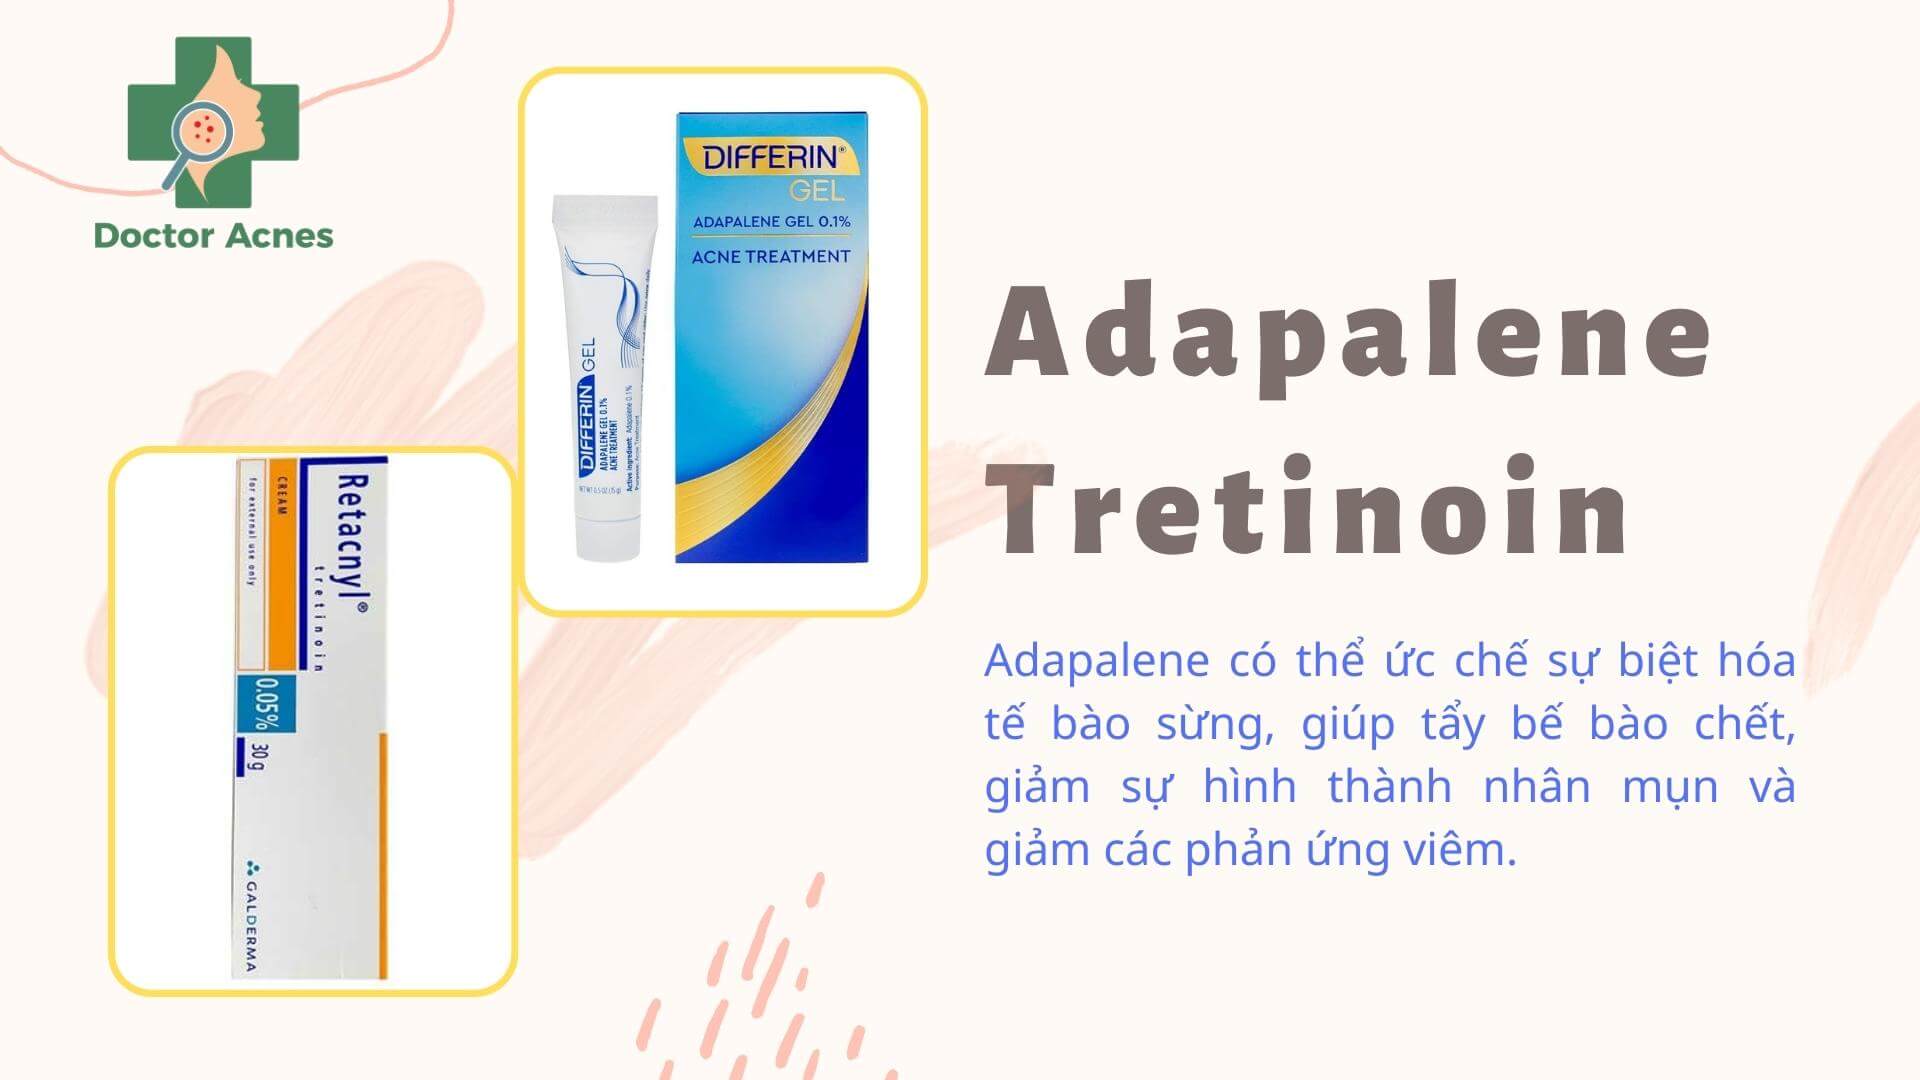 Hoạt chất chấm mụn Adapalene và tretinoin - Doctor Acnes